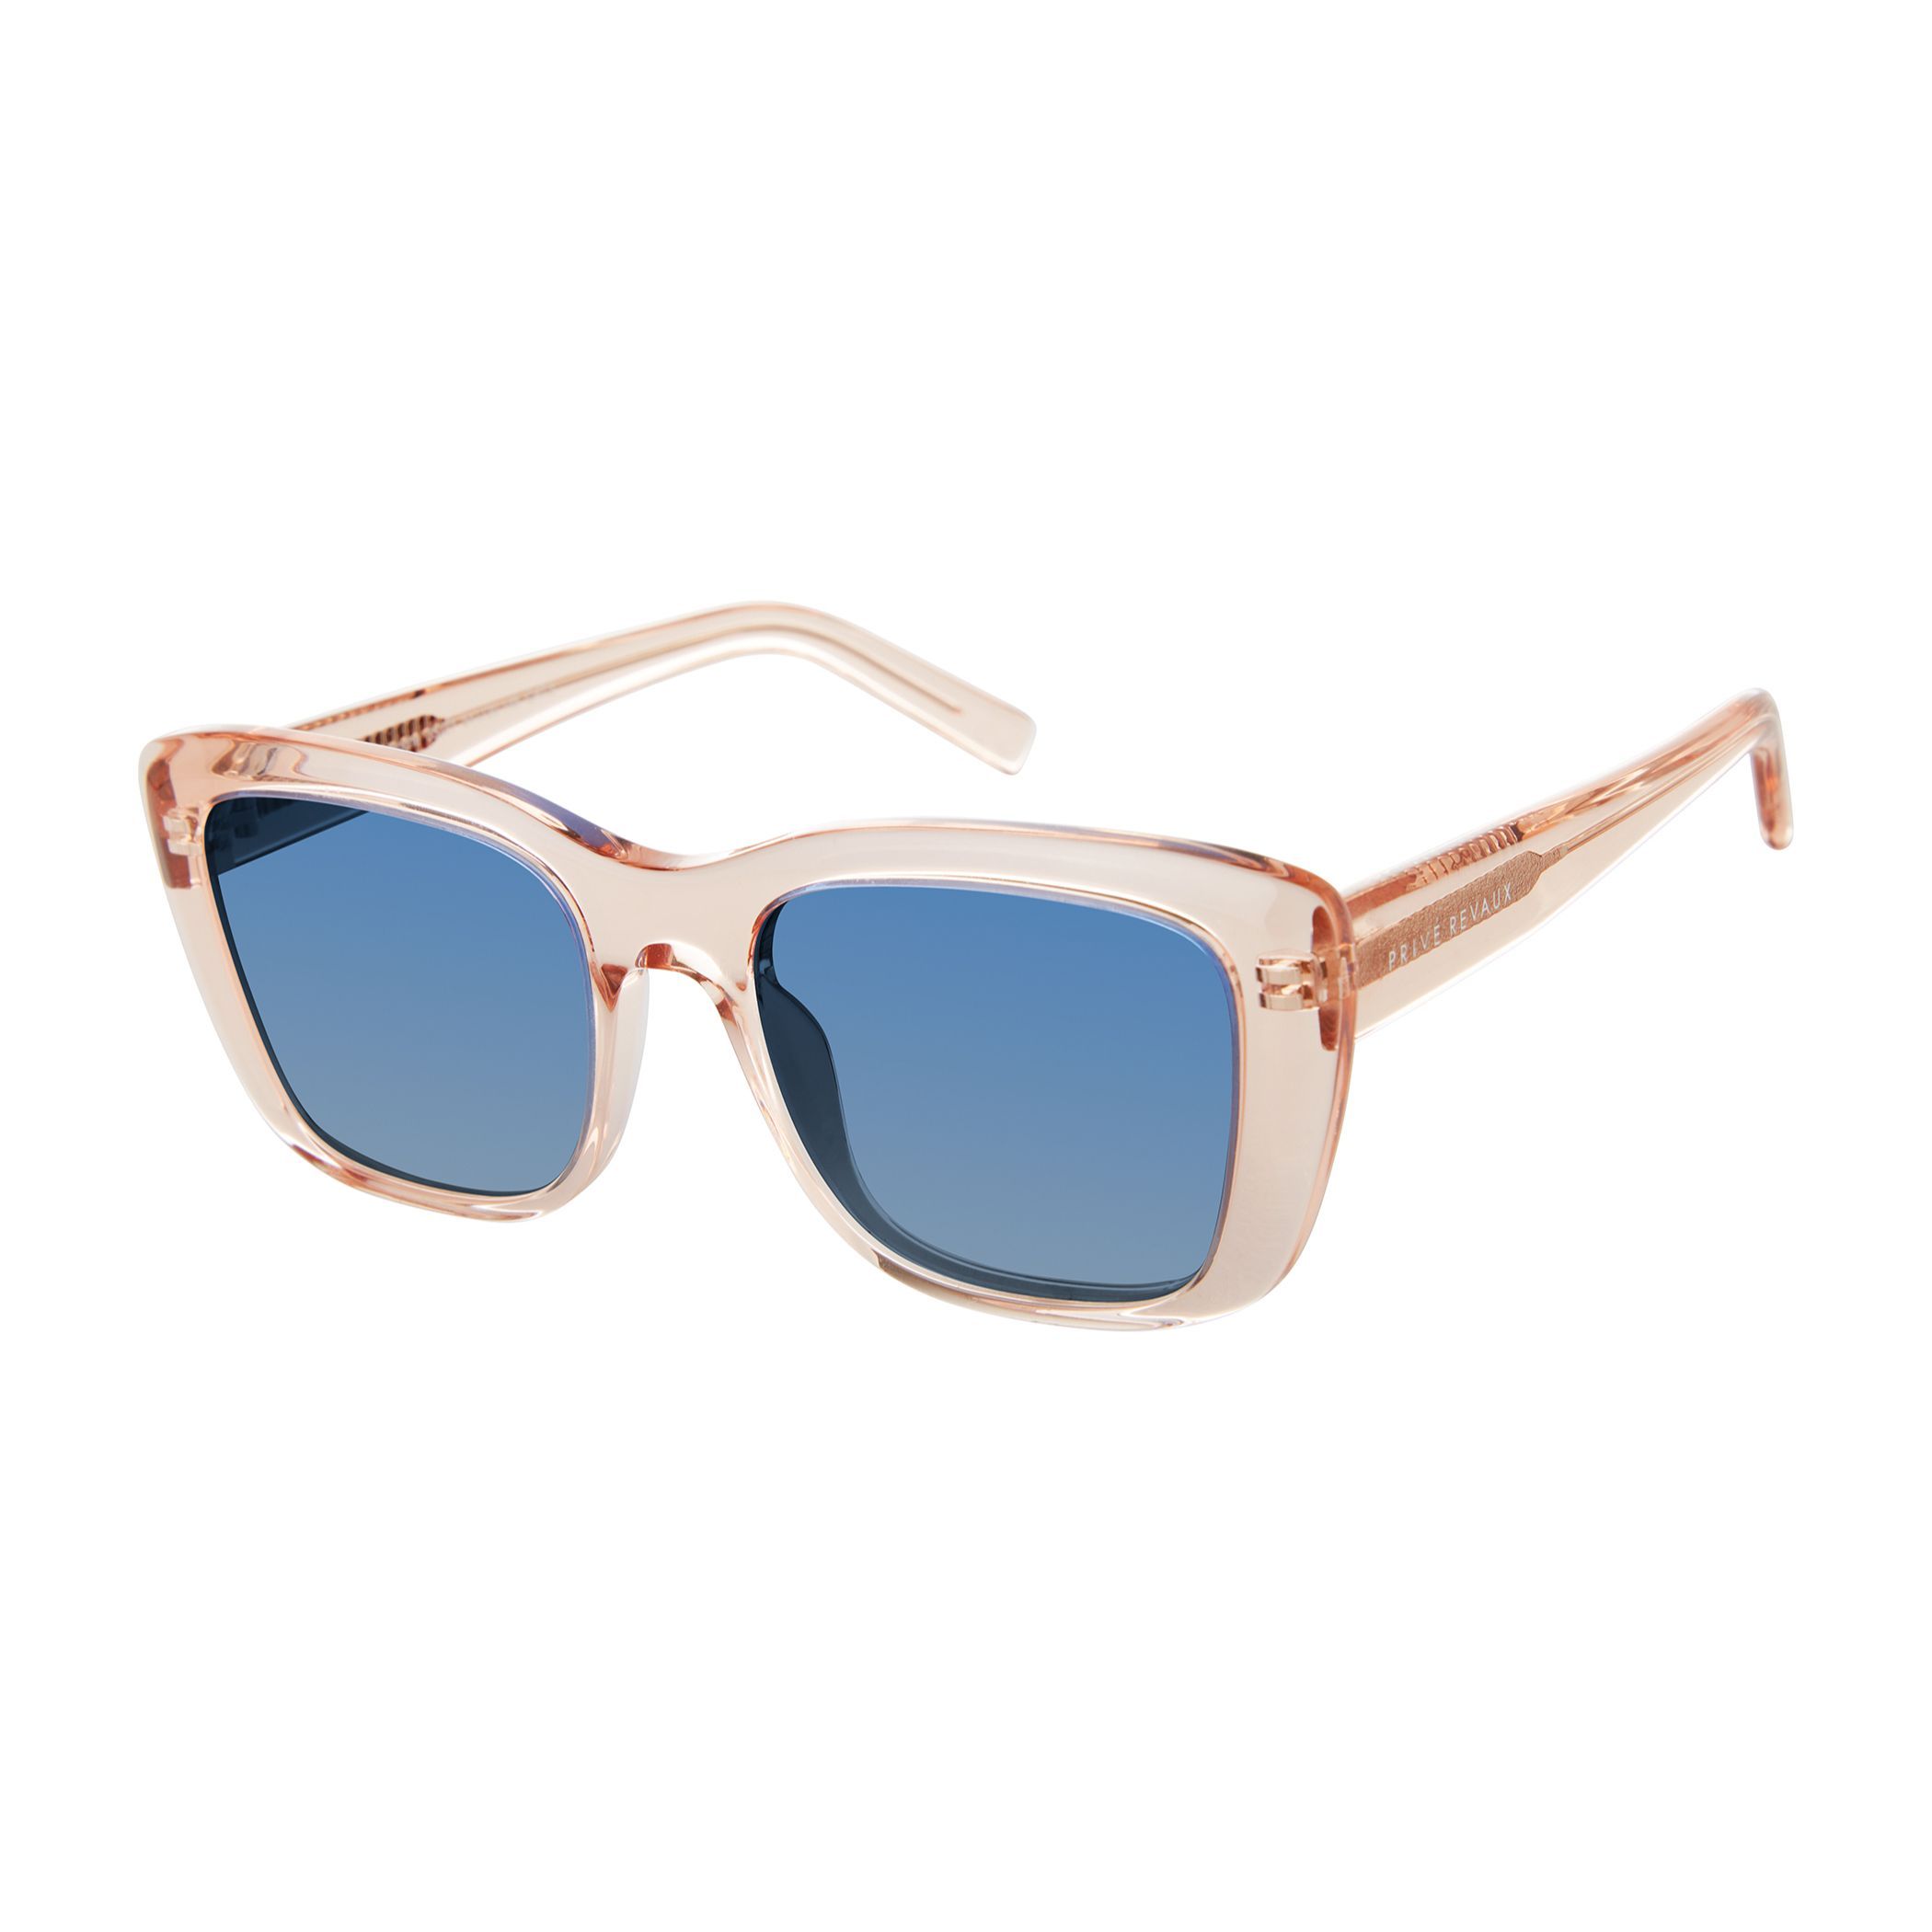 LA NOCHE S Rectangle Sunglasses 35J Z7 - size 54